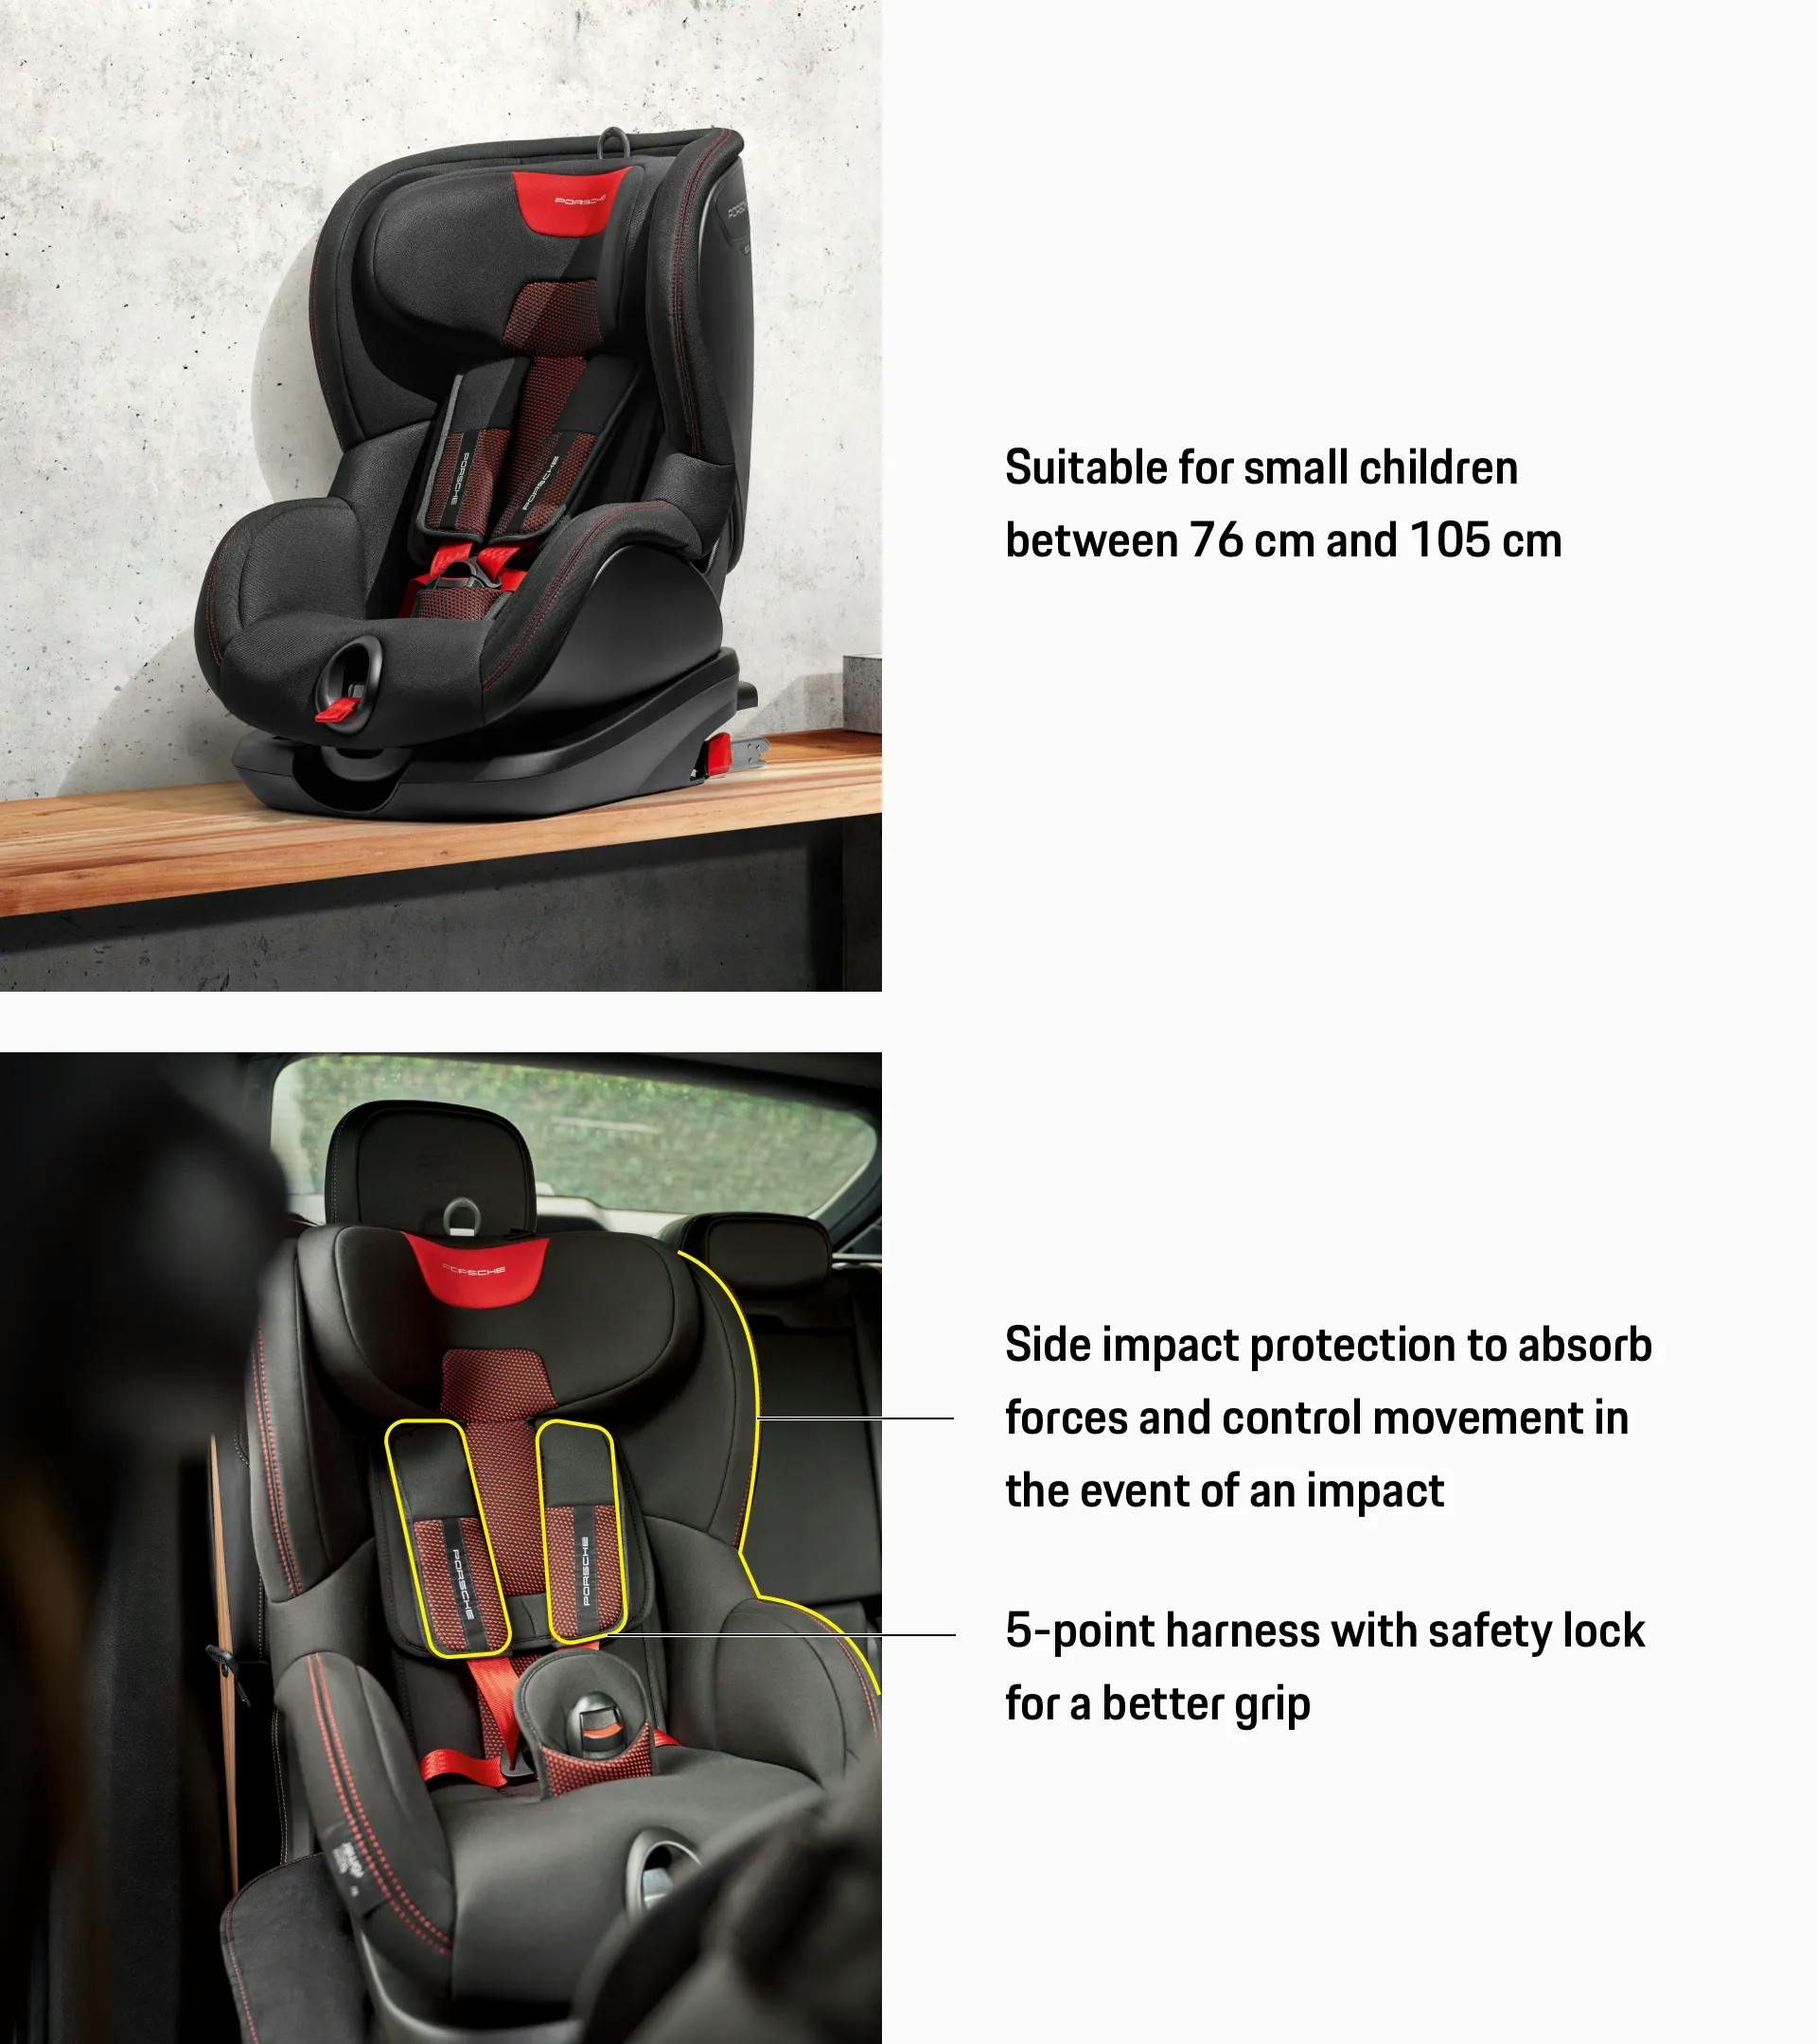 Kindersitz-Unterlage Basic fürs Auto, 3 Netztaschen, Isofix